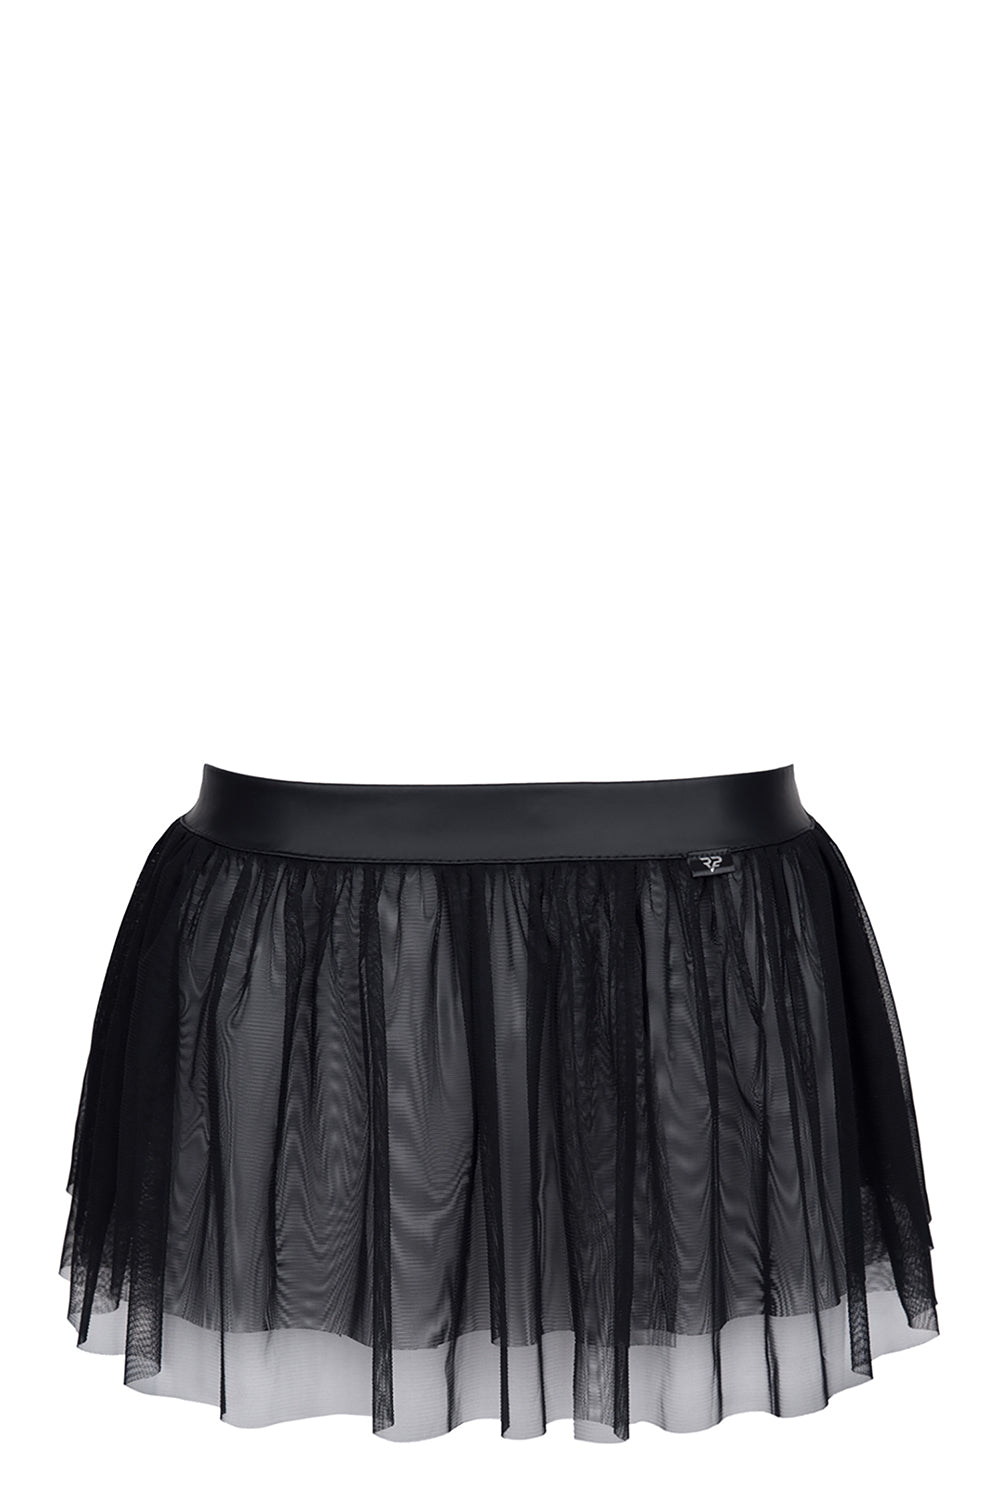 Crd Mini Skirt L